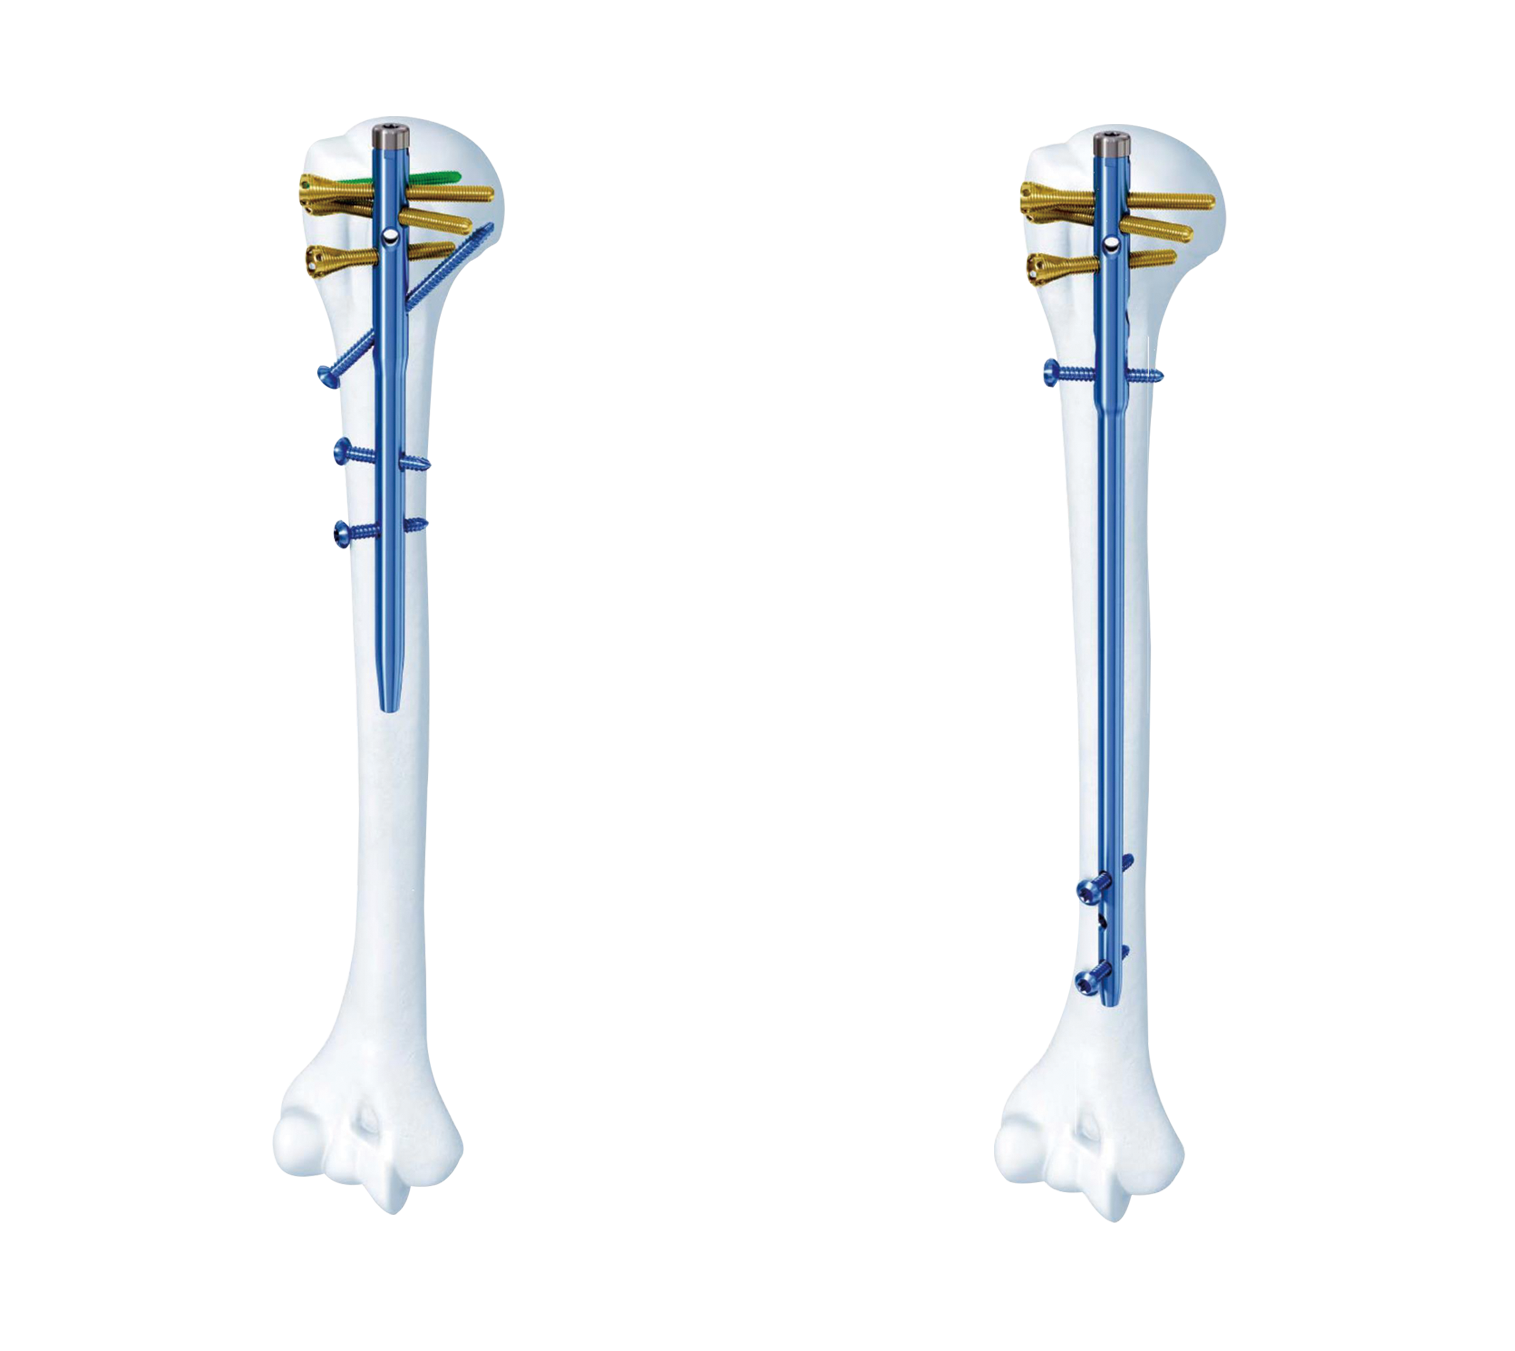 肱骨近端多维髓内钉系统